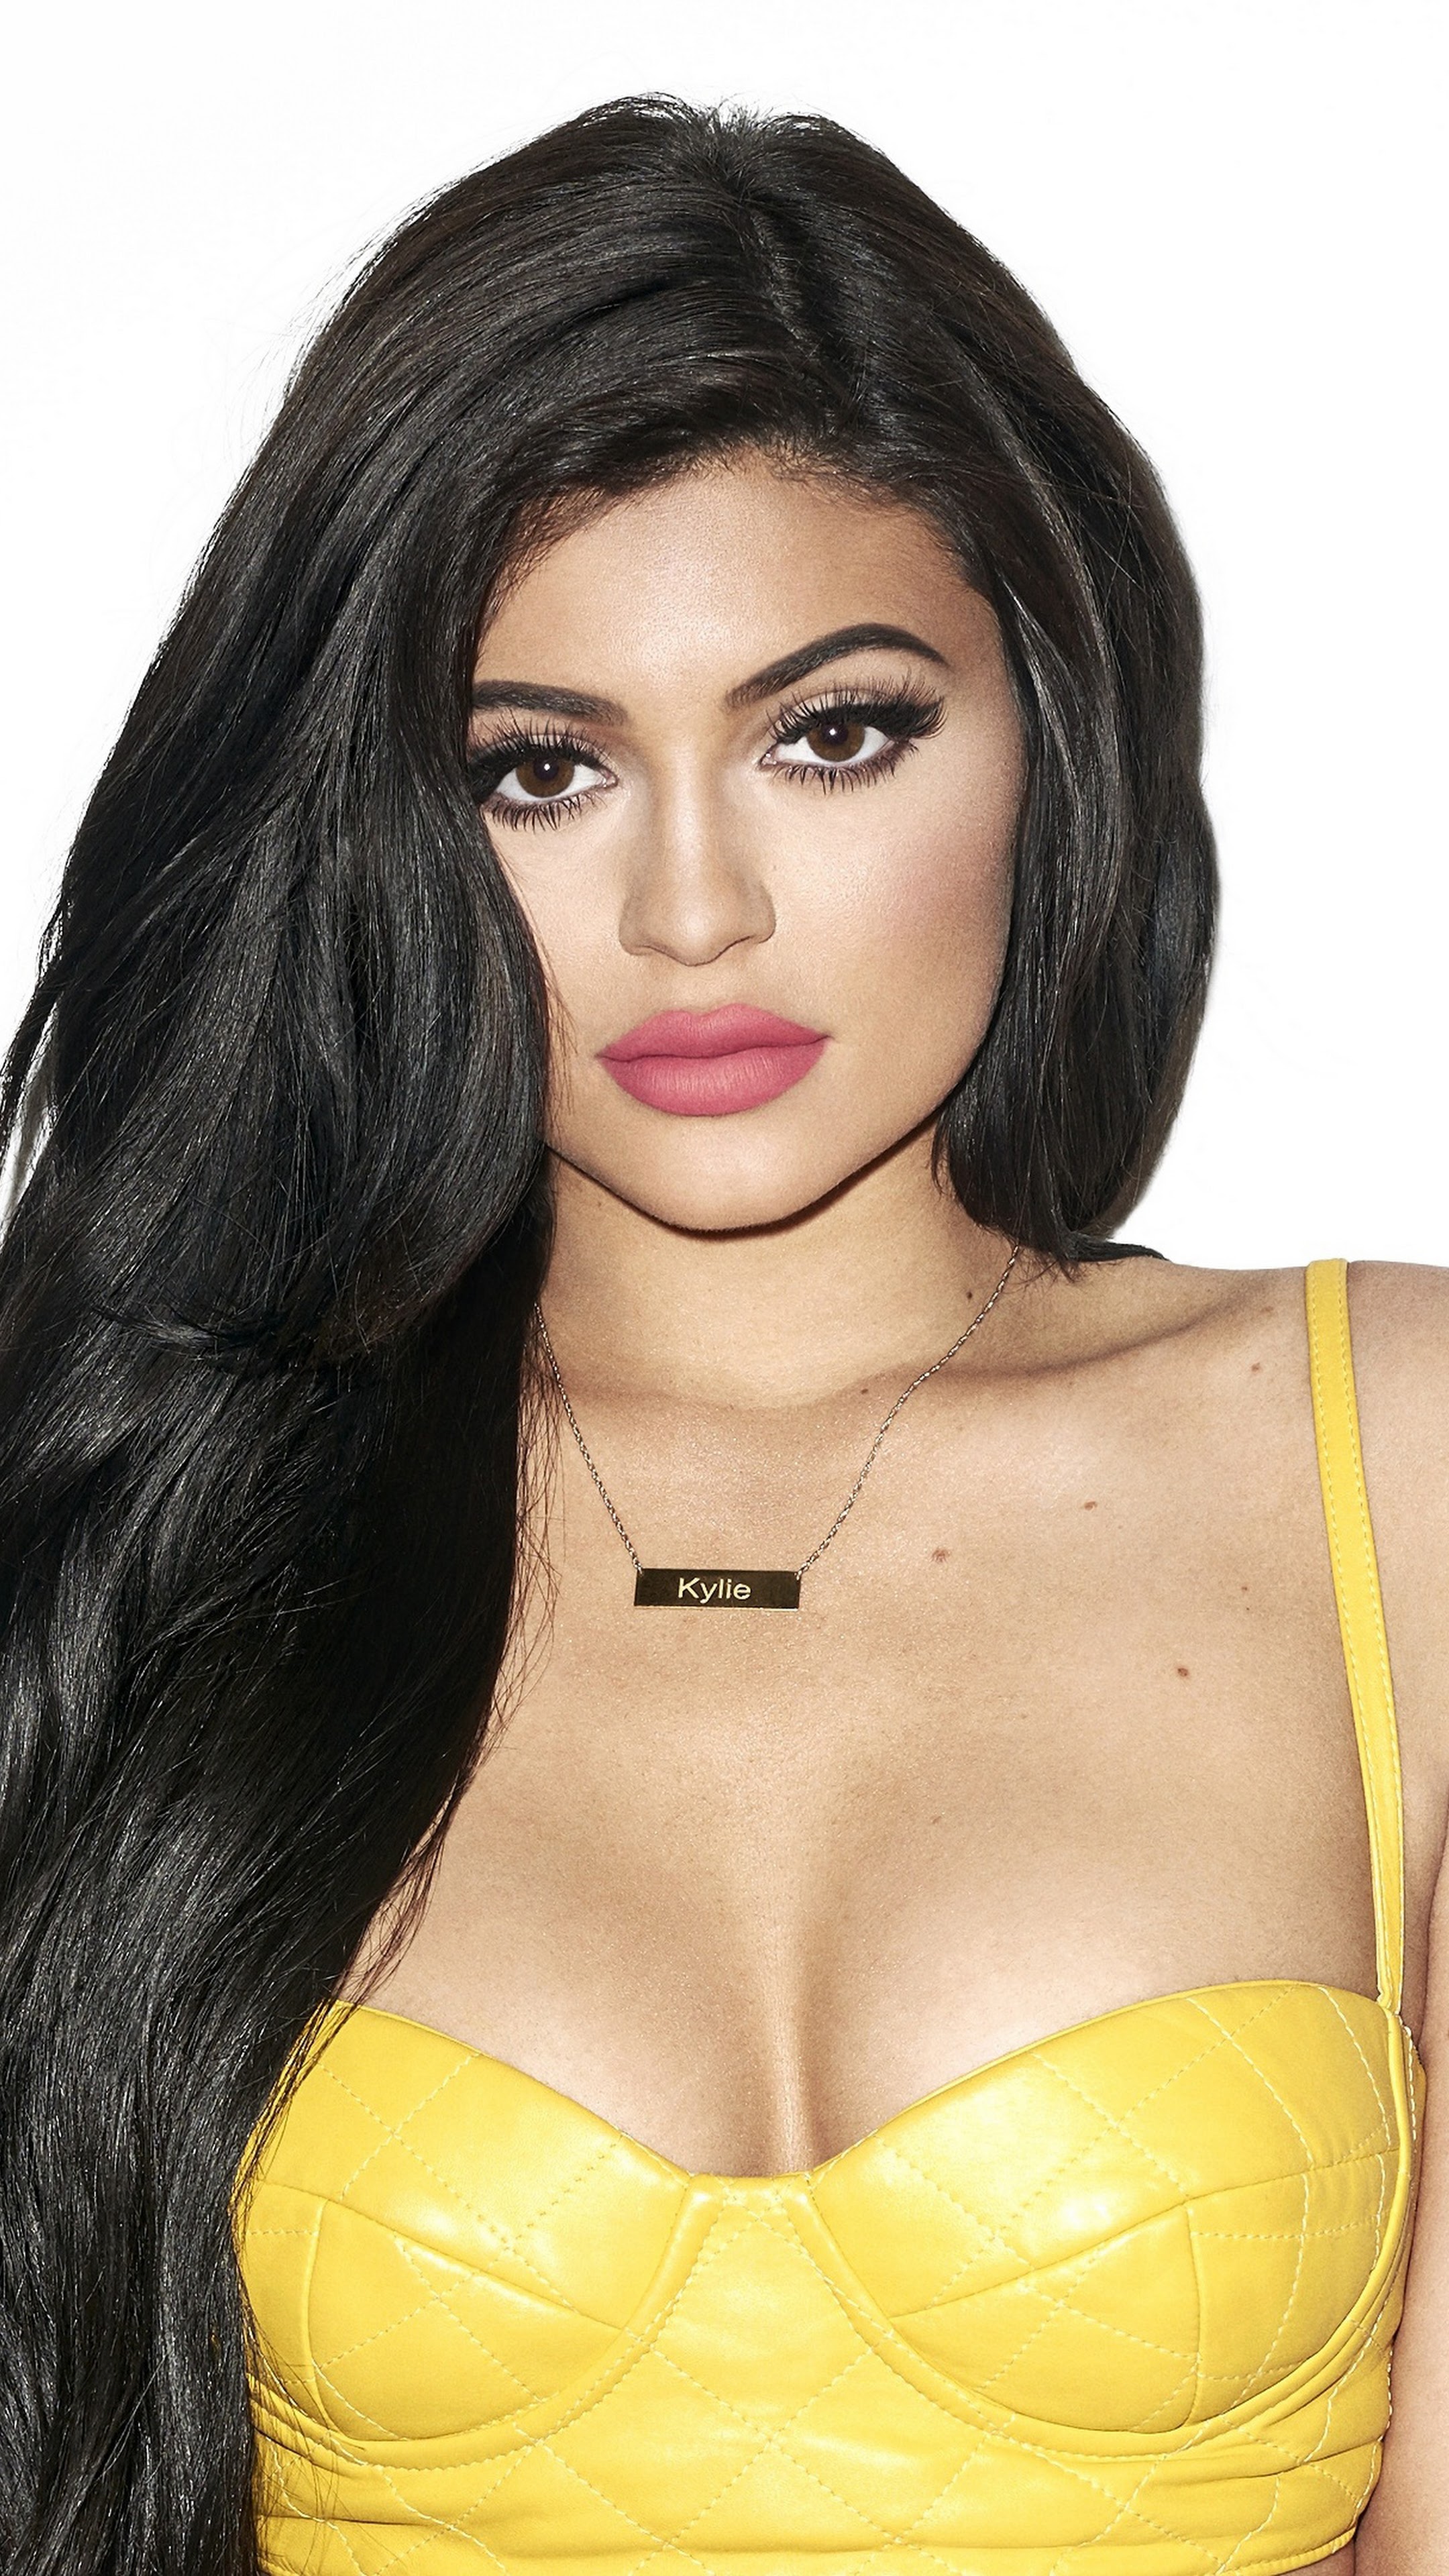 Kylie Jenner Model Brunette Girl 4K Wallpaper